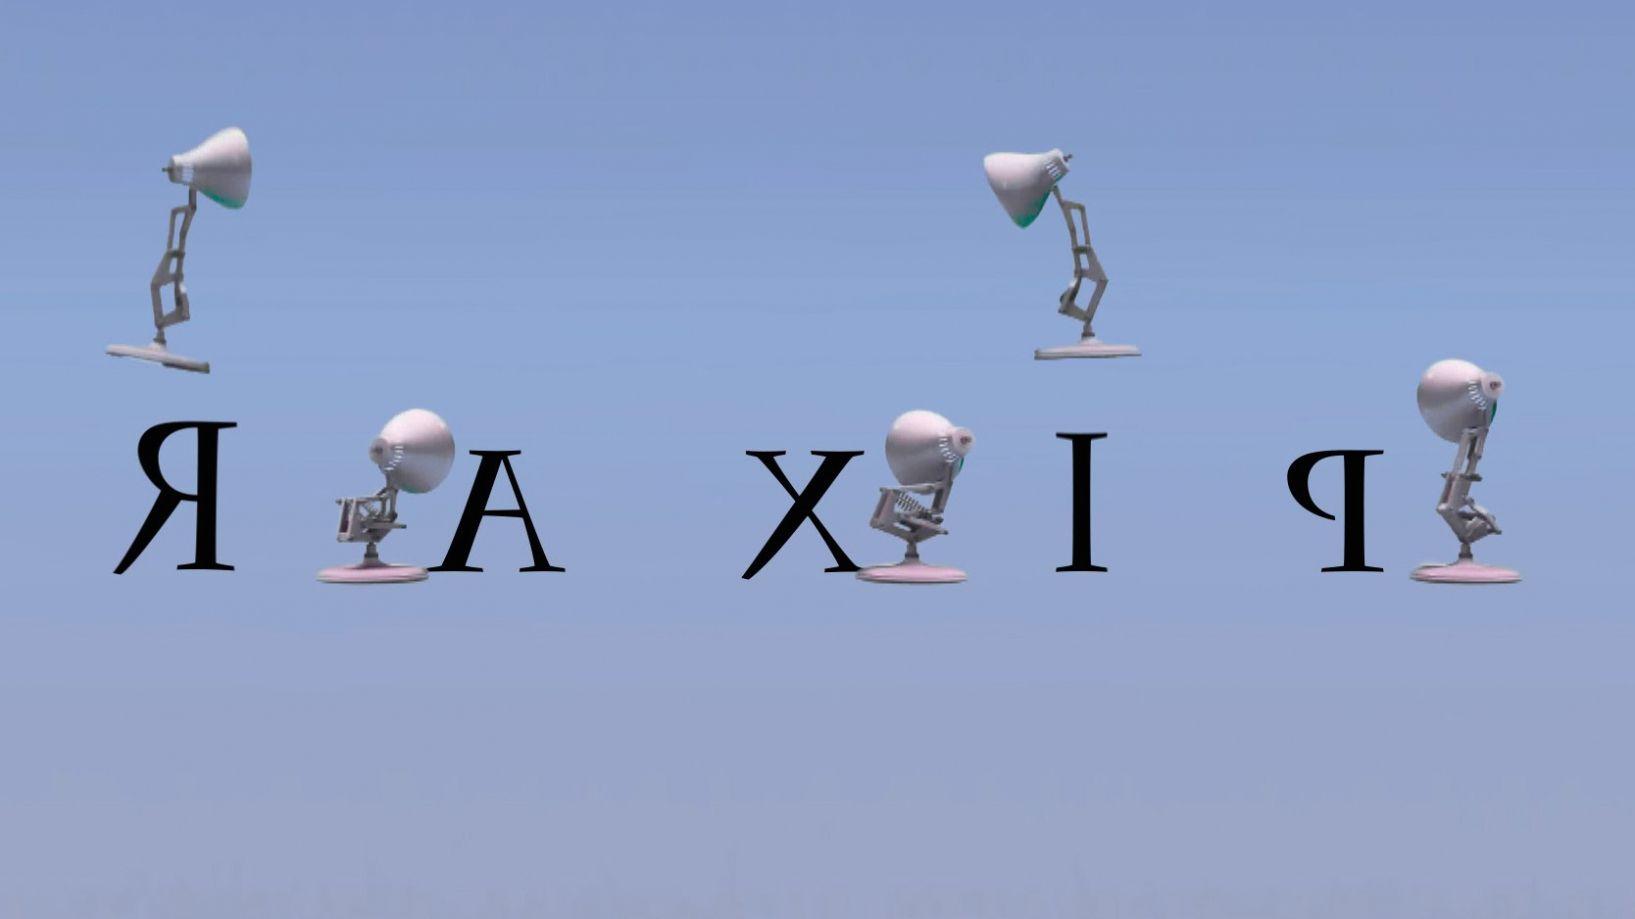 Pixar Lamp Logo - Lamps: 189 Five Pixar Lamps Spoof Pixar Lamp Luxo Jr Logo With ...